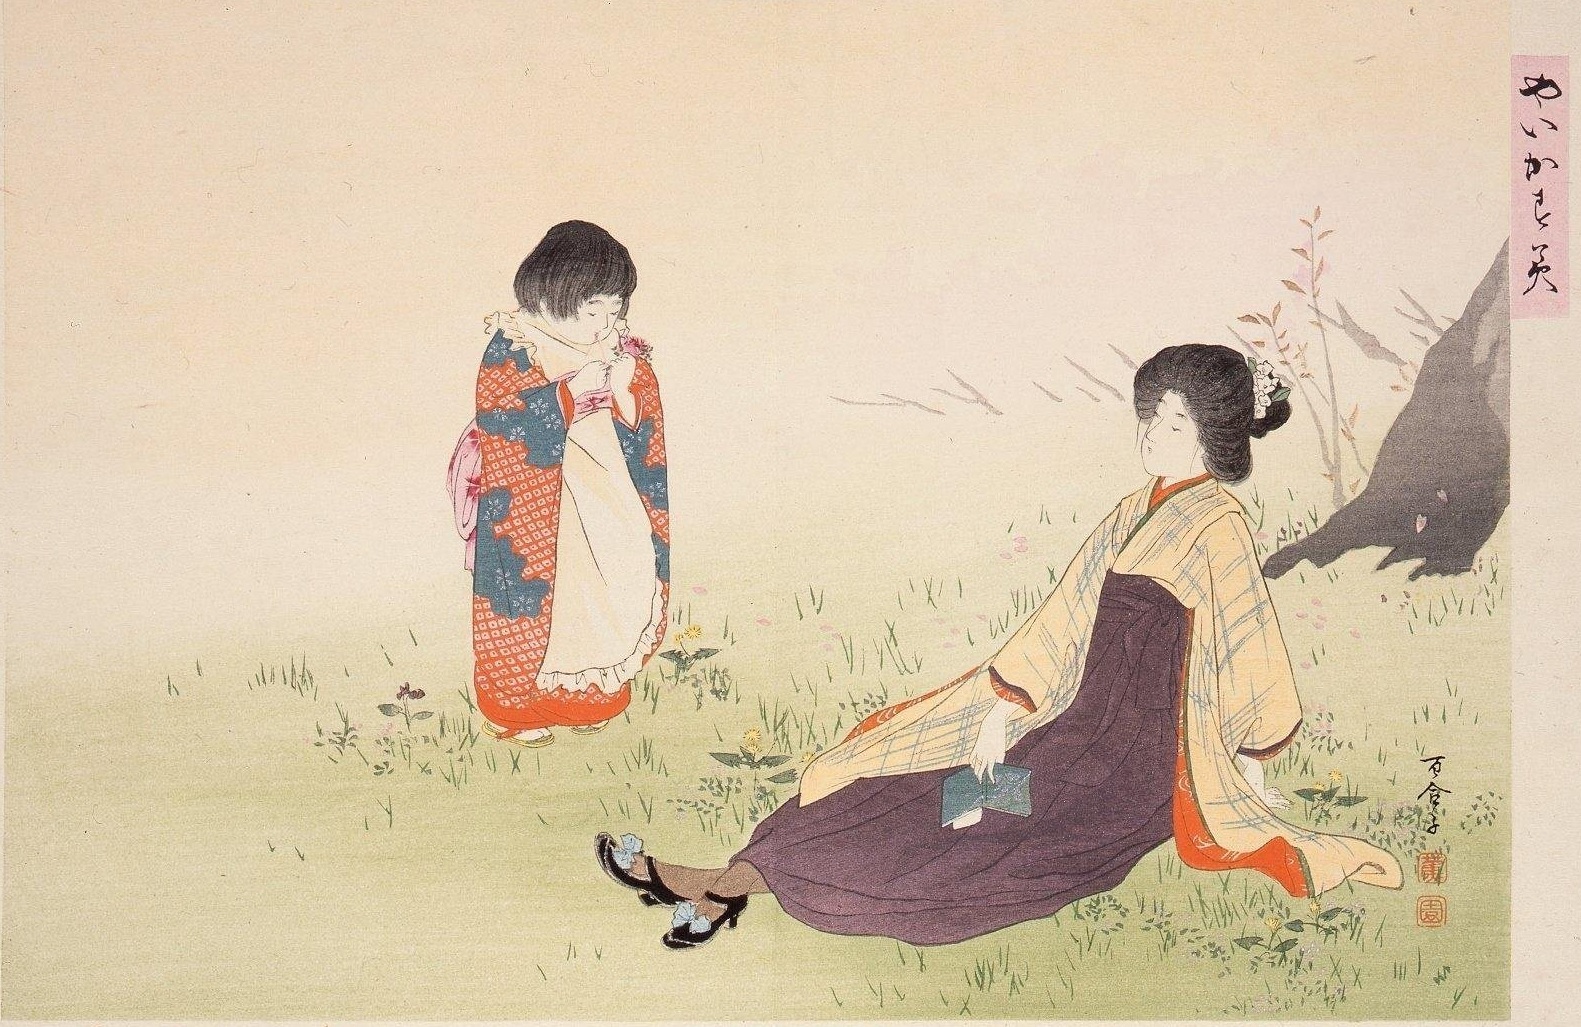 ,,Прикупљање прољећног биља" из серије ,,Проткана магла" by Ikeda Shōen - 1906 - 25 x 35.5 цм 